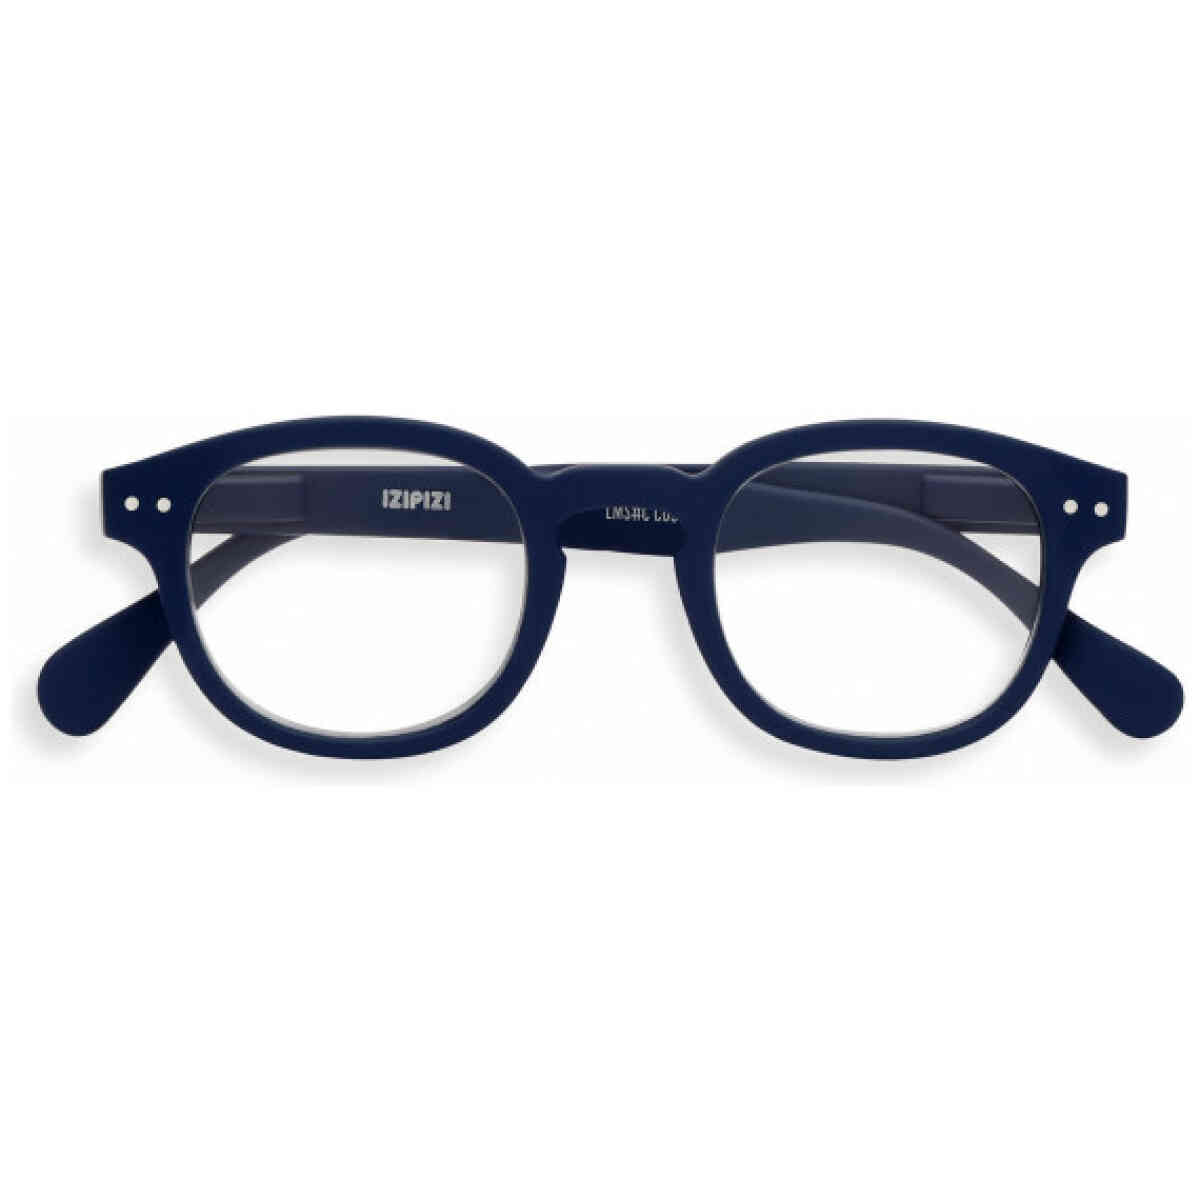 c navy blue reading glasses